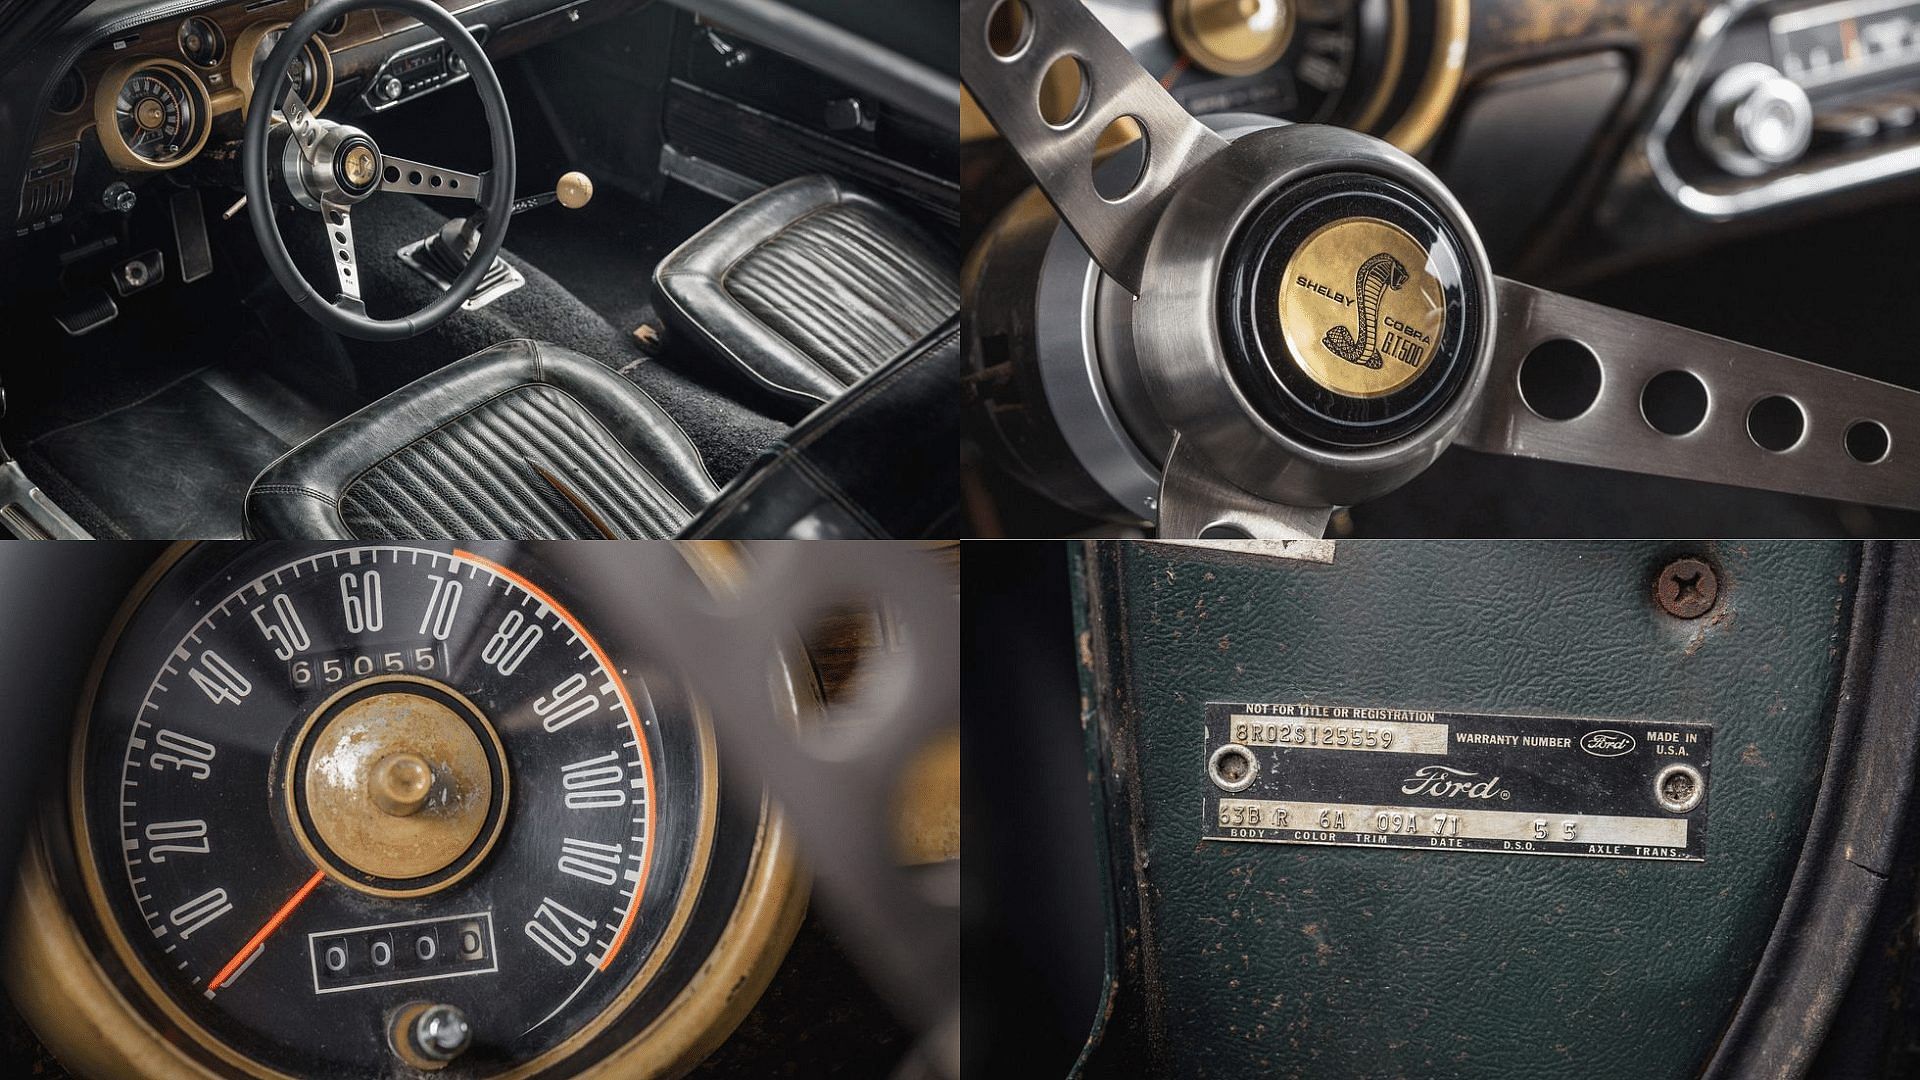 1967 Ford Bullitt Mustang cabin, steering wheel, speedometer, VIN number